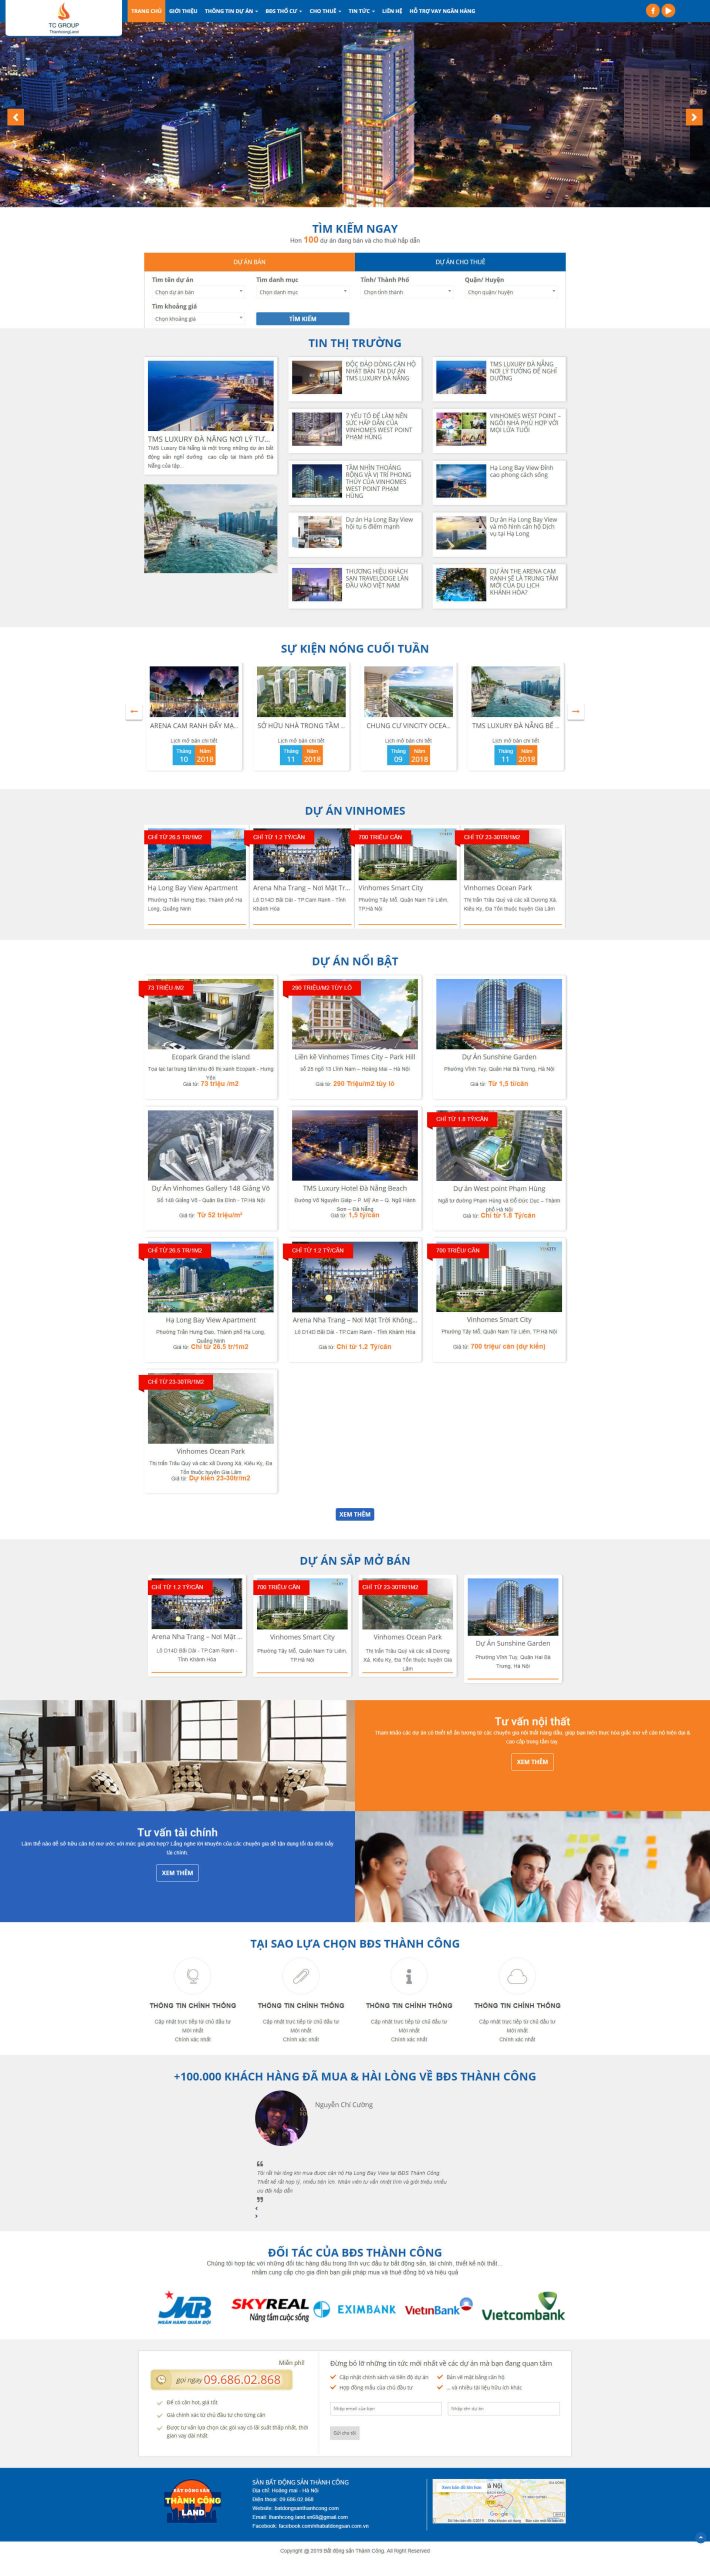 Mẫu website bất động sản cho nhiều dự án 2